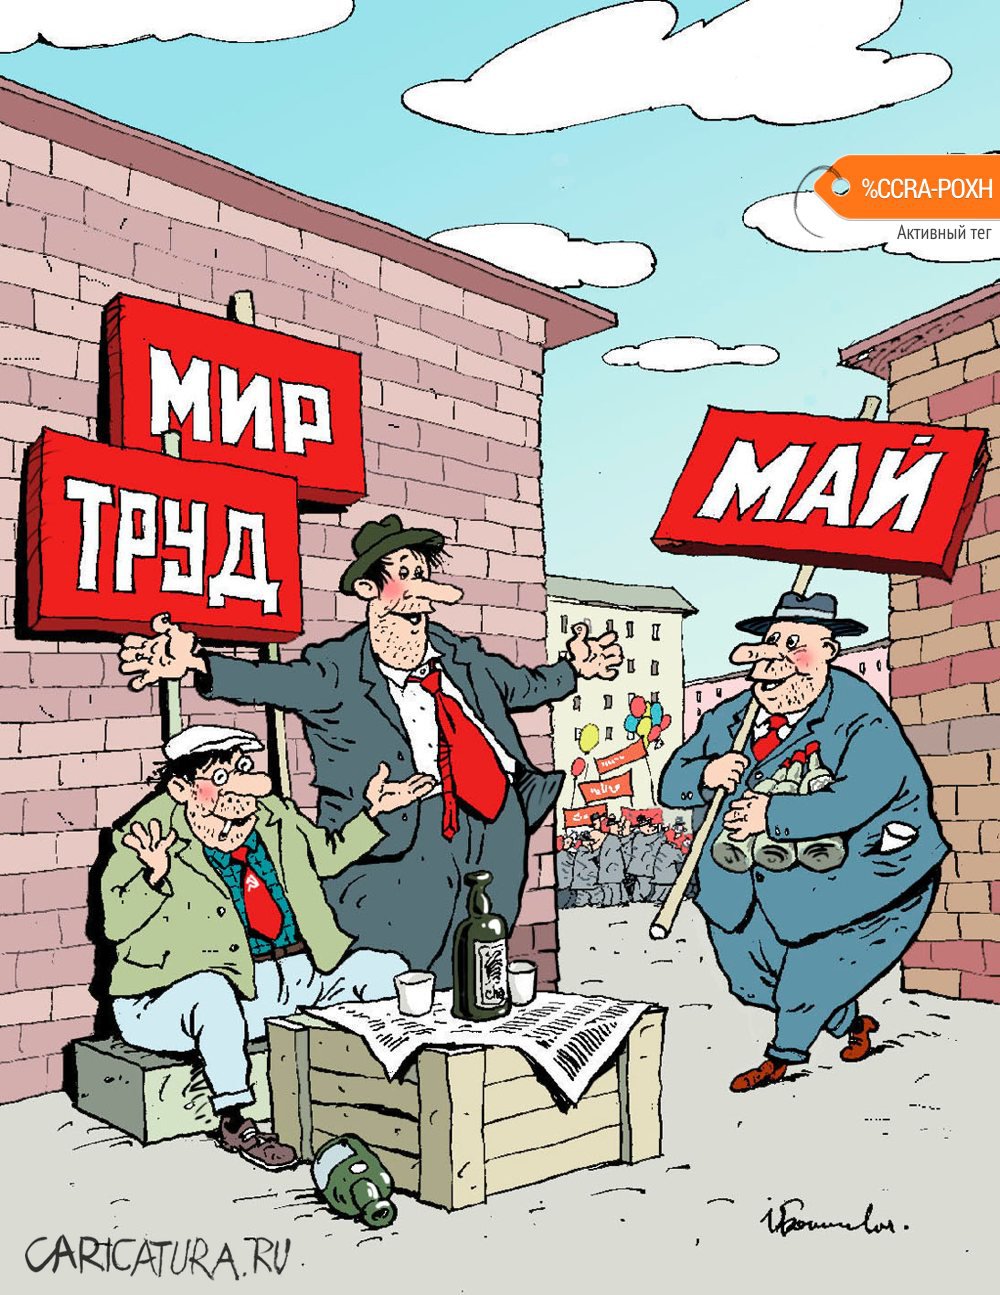 Карикатура "Мир, труд, май", Игорь Елистратов